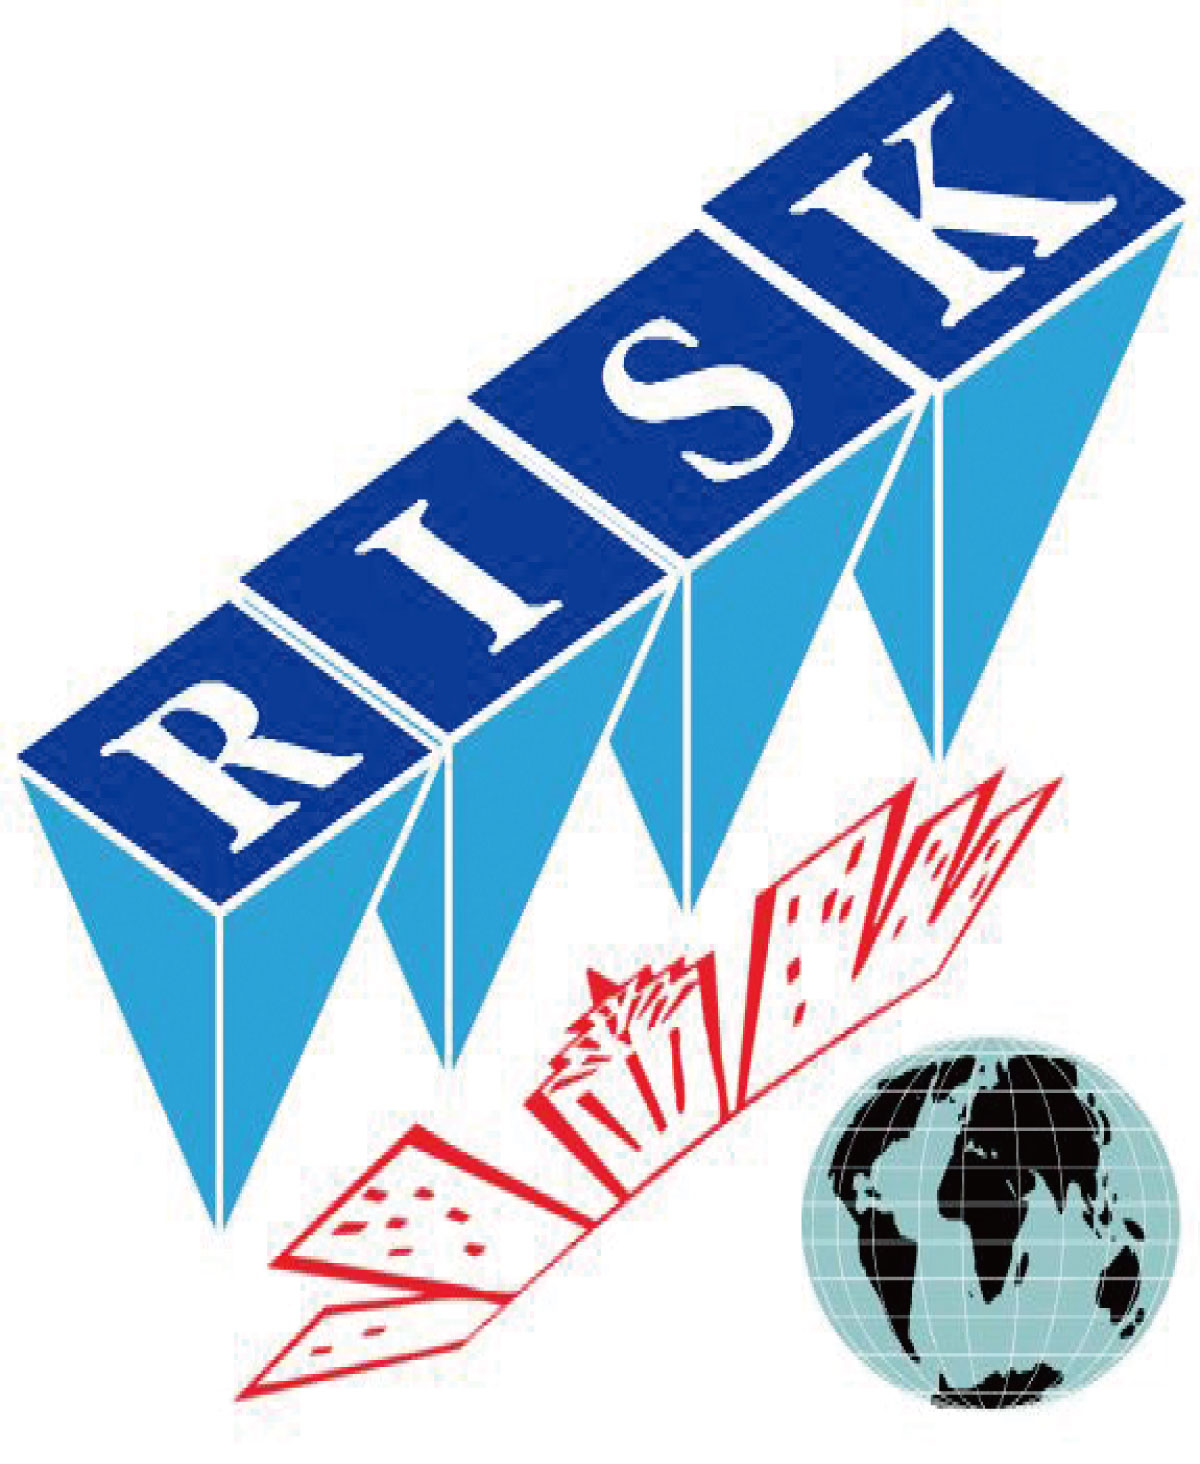 リスク管理イメージ